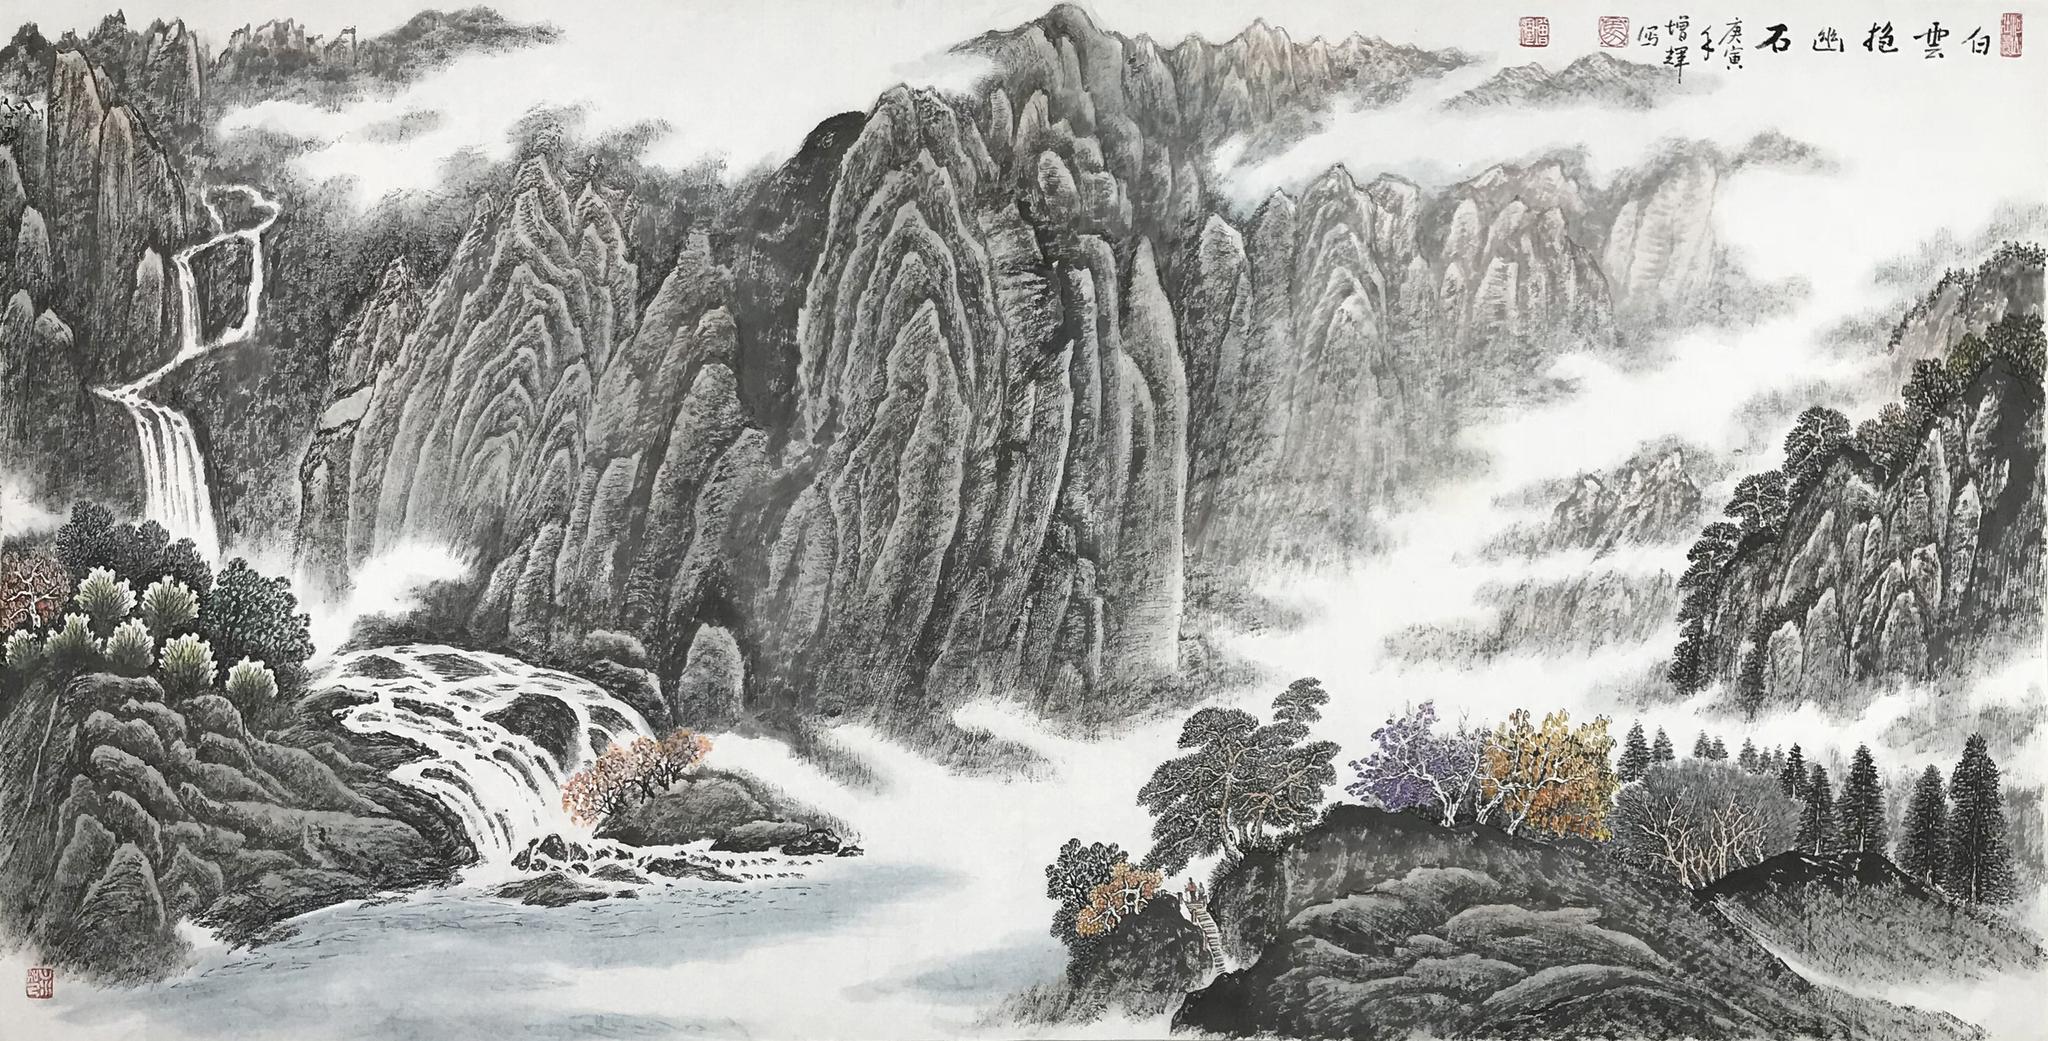 而山水画不仅是世界艺术丛林中独特的风景,也承载着中国人文领域里最